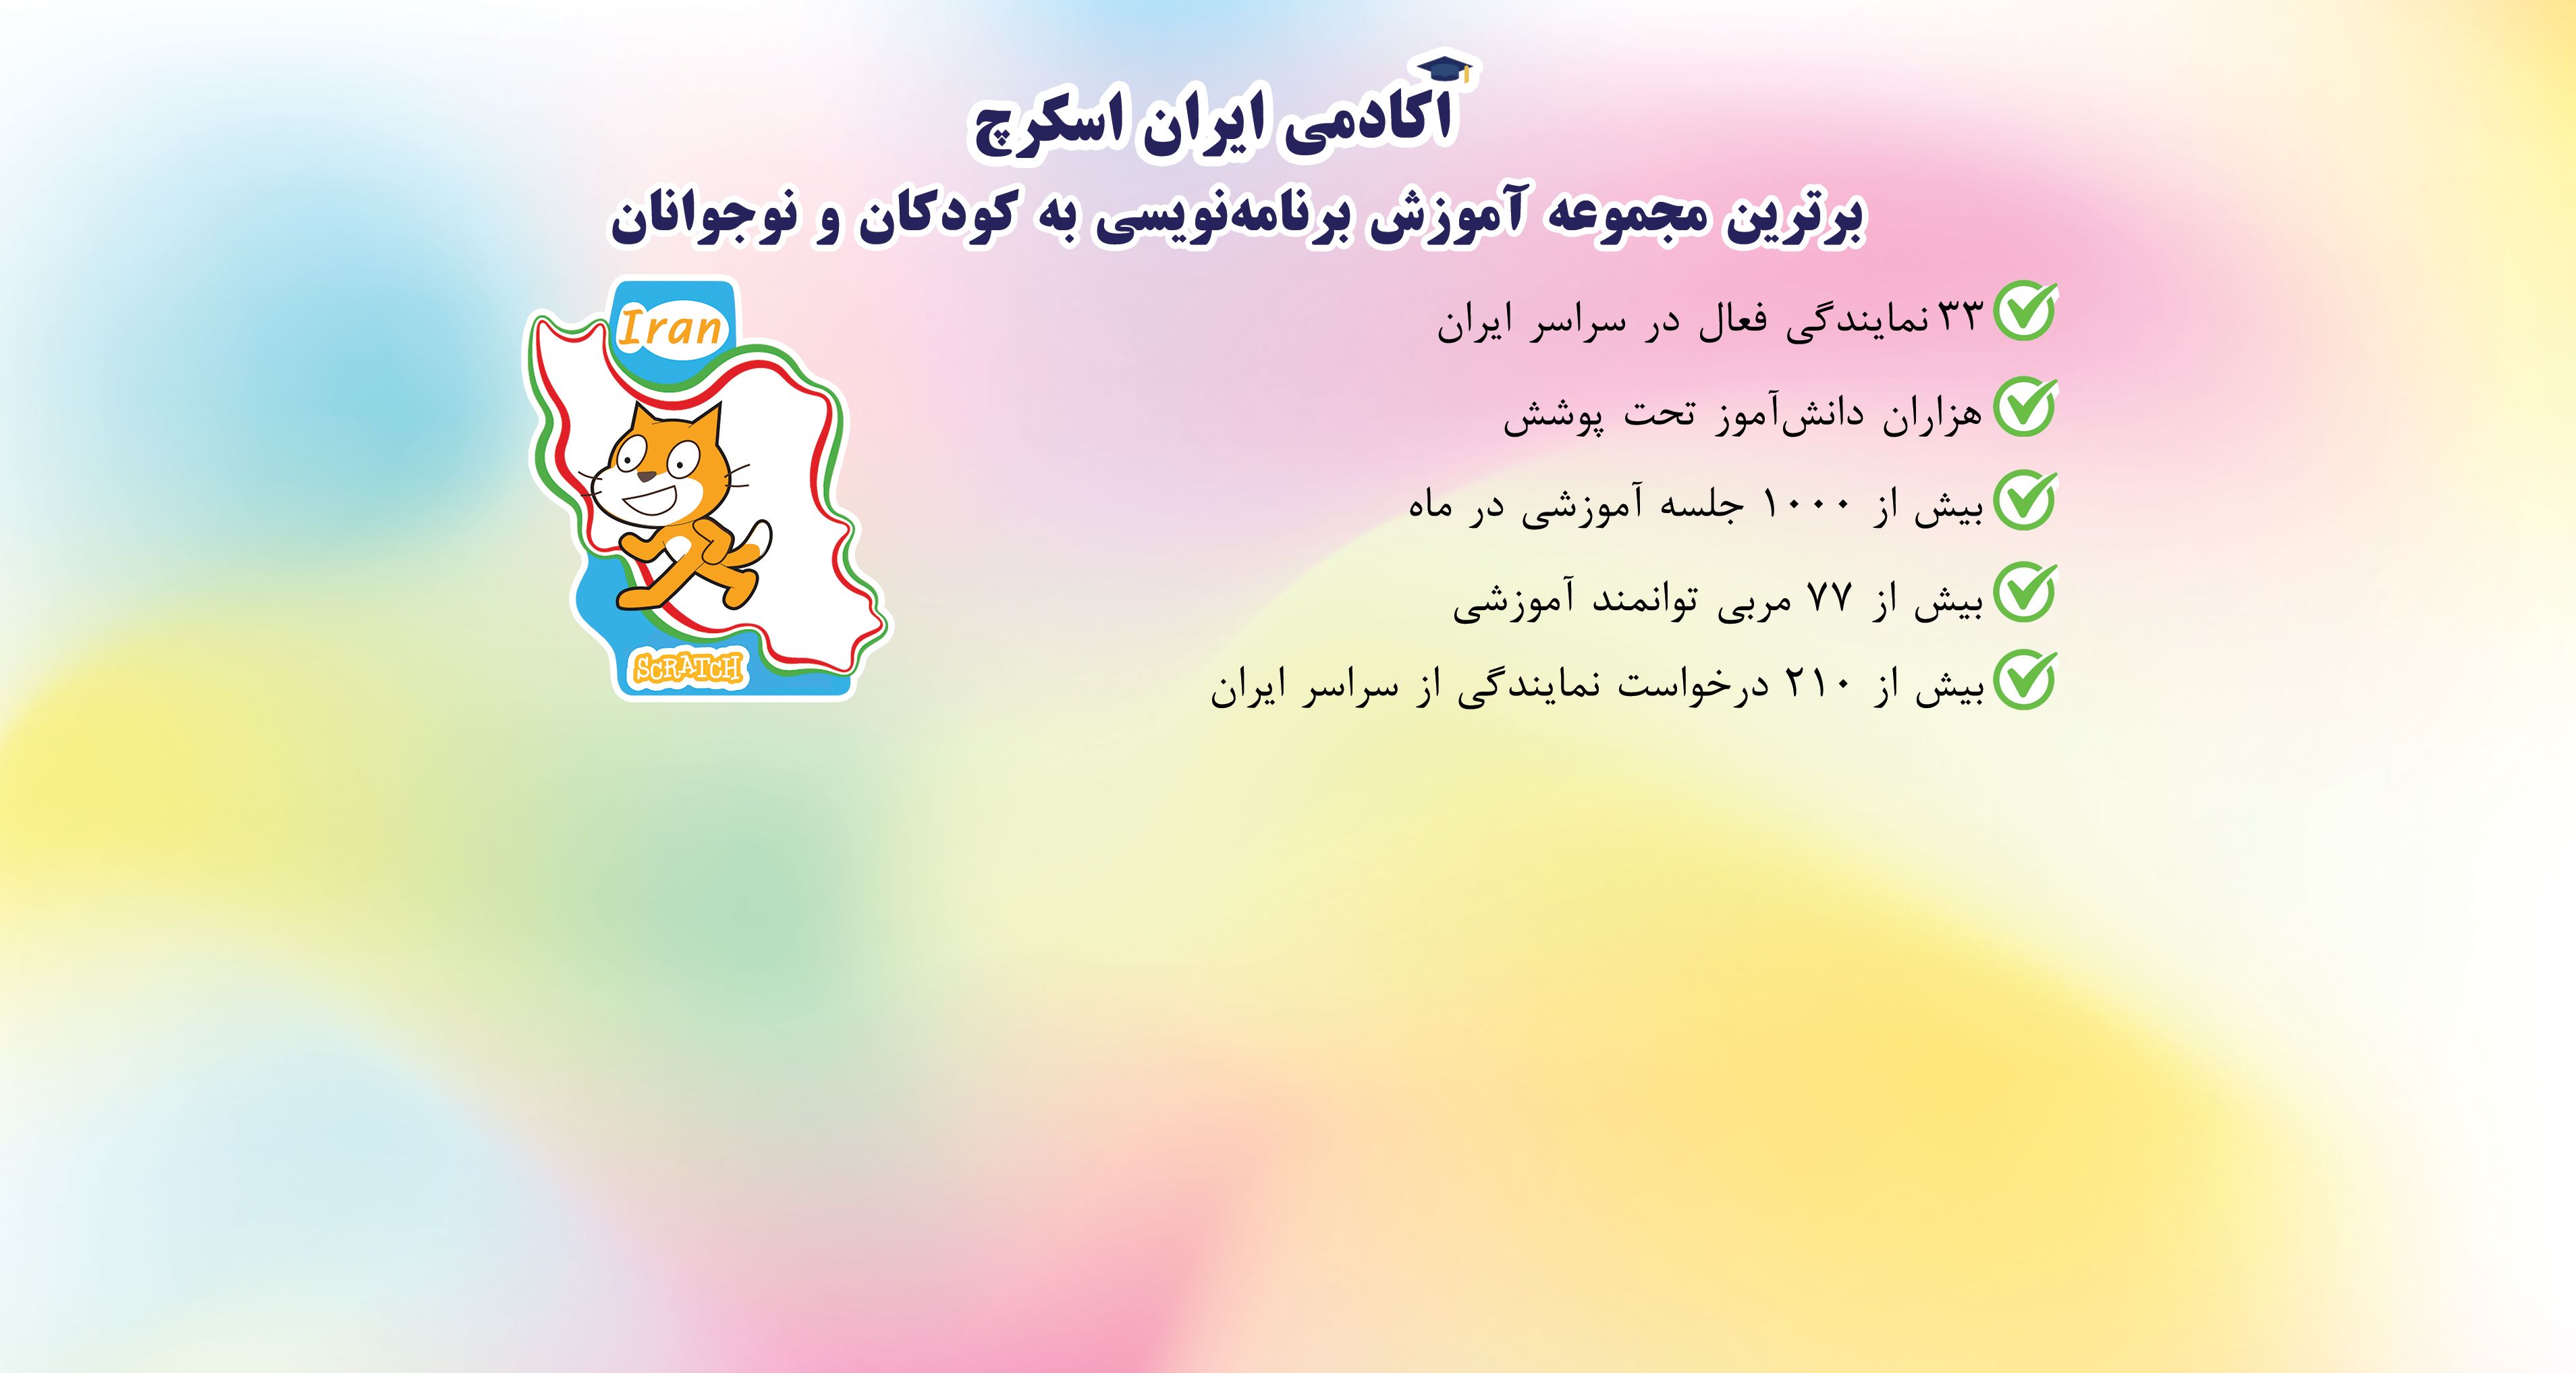 برترین مجموعه آموزش برنامه نویسی در ایران